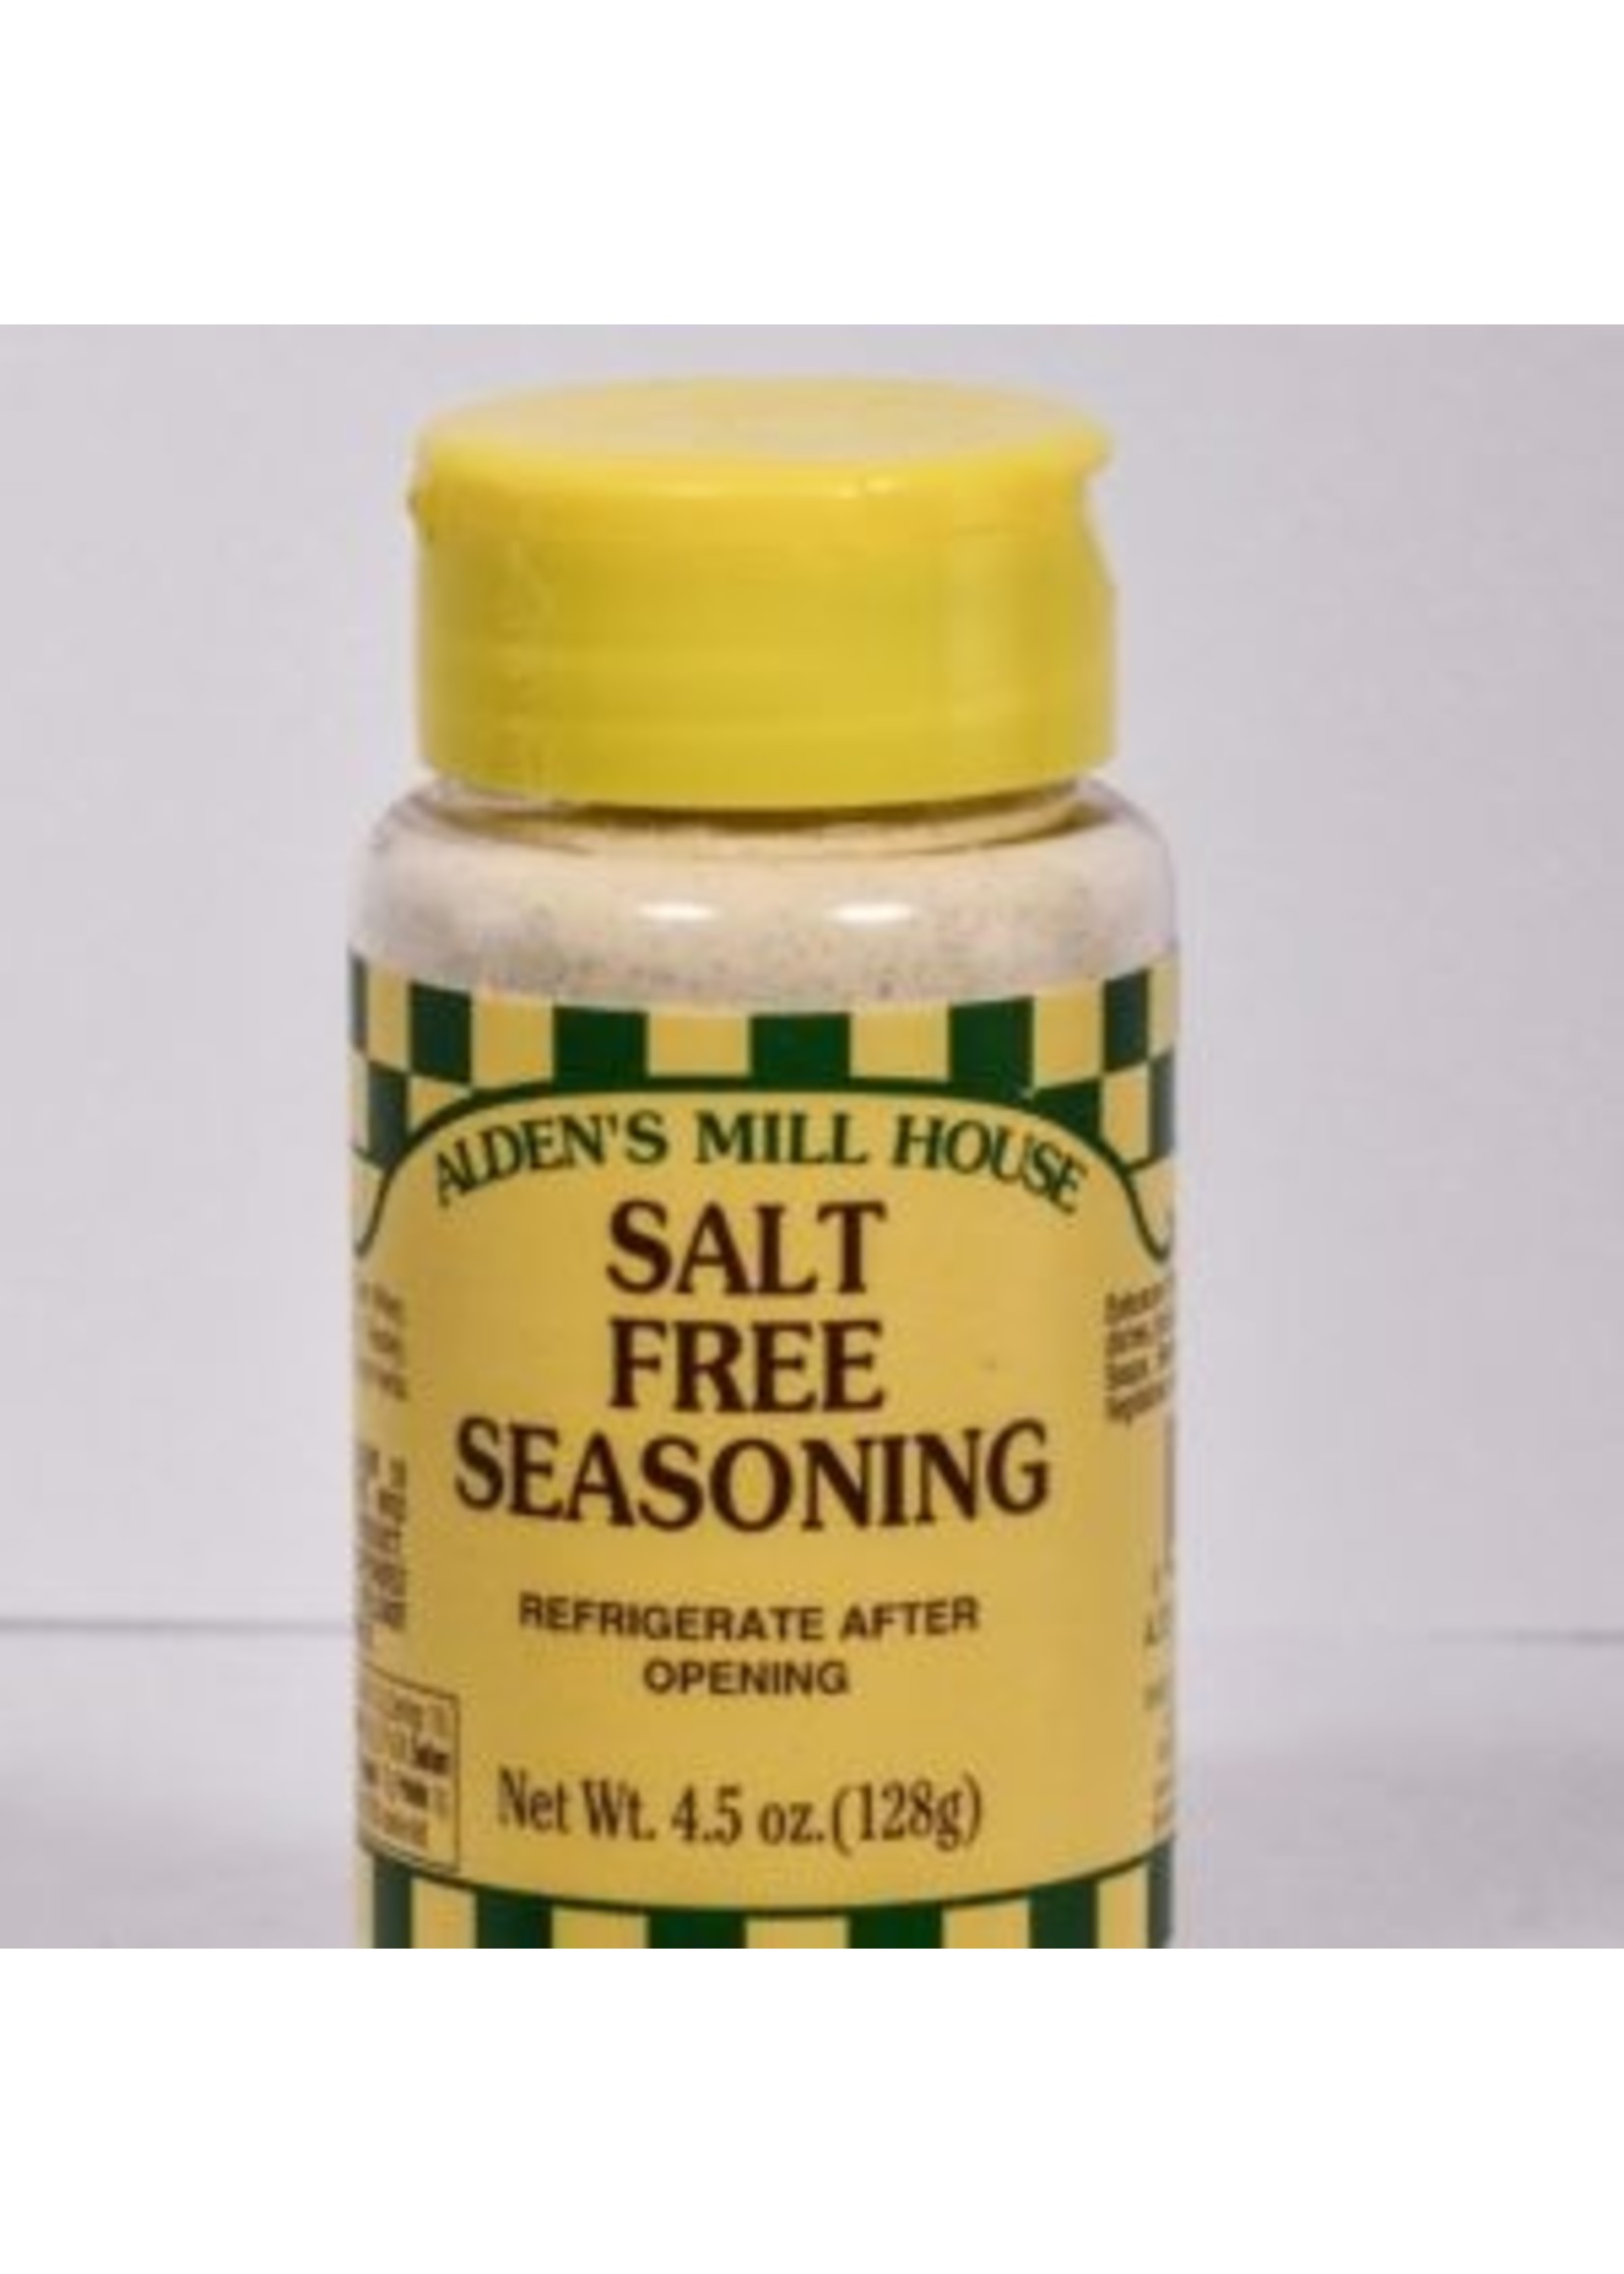 Alden's Mill House Alden's Mill House - Salt Free Seasoning 4.5 oz